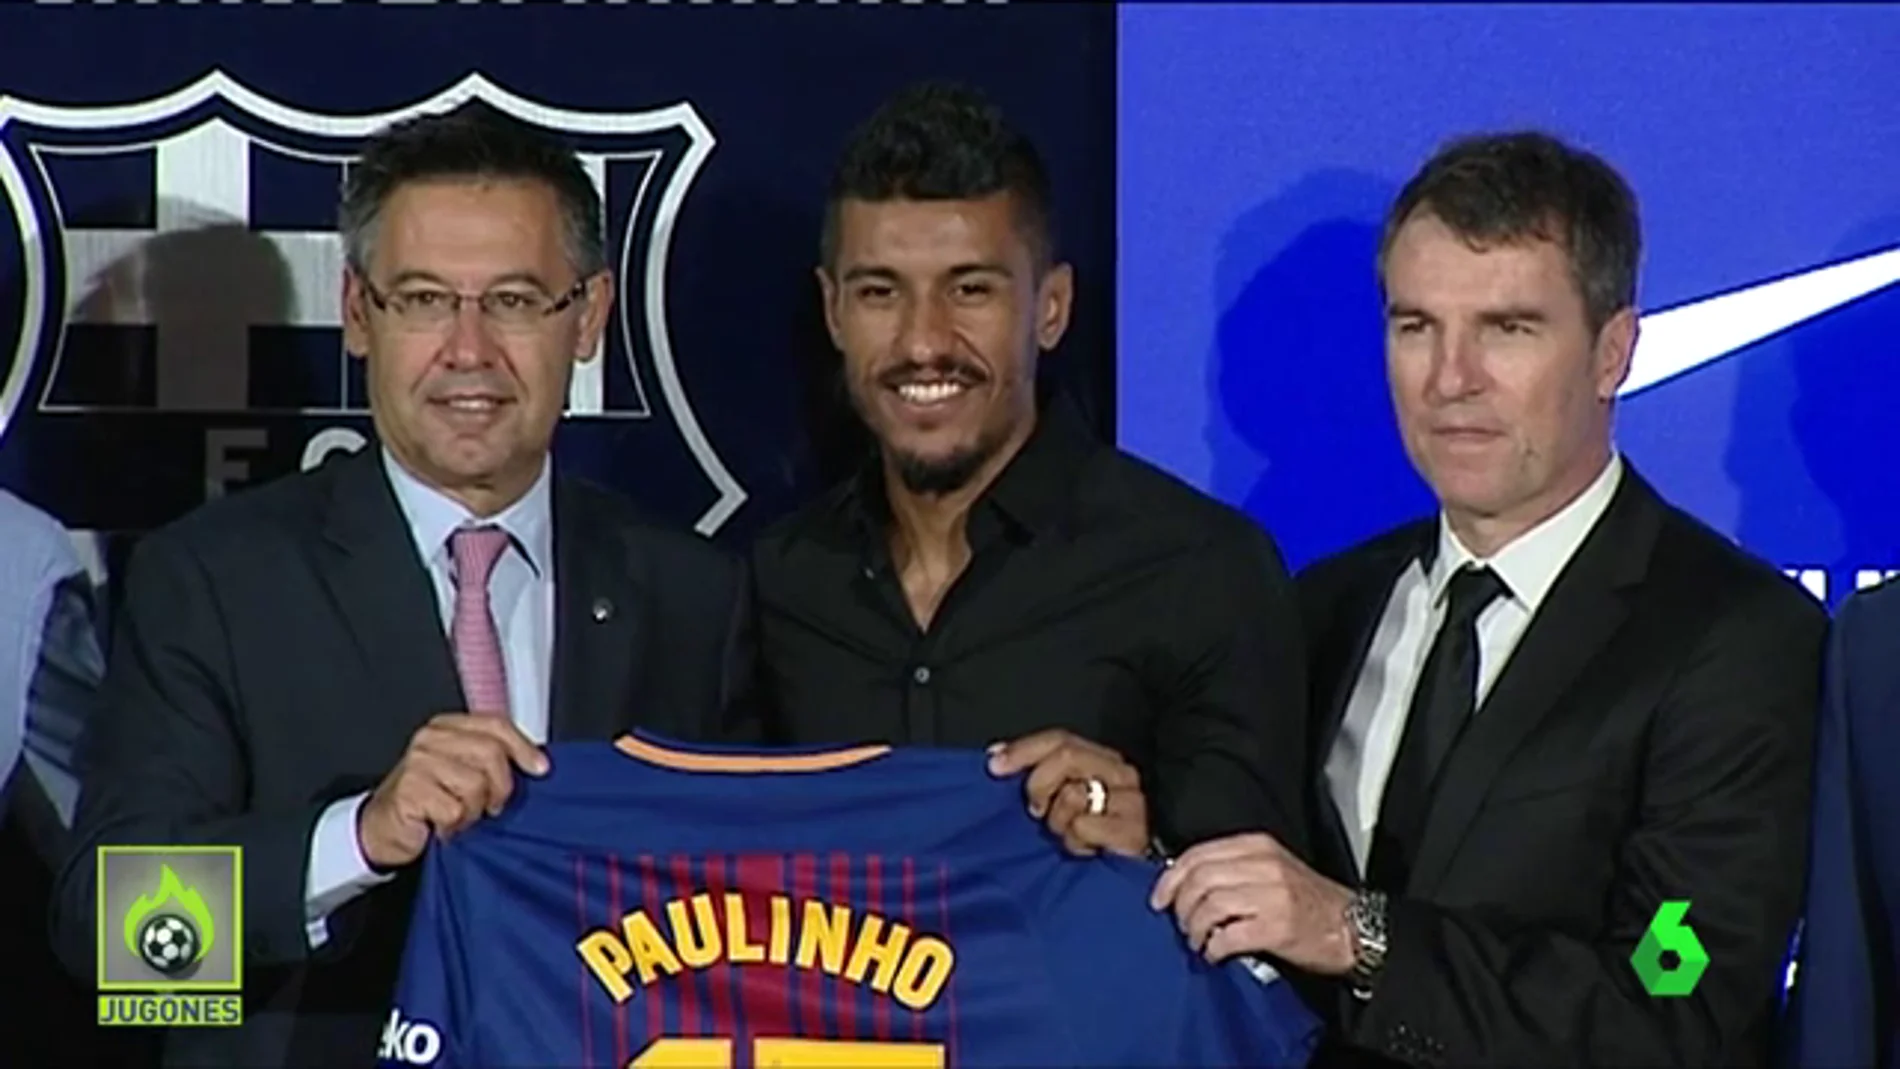 Paulinho, presentado con el Barça